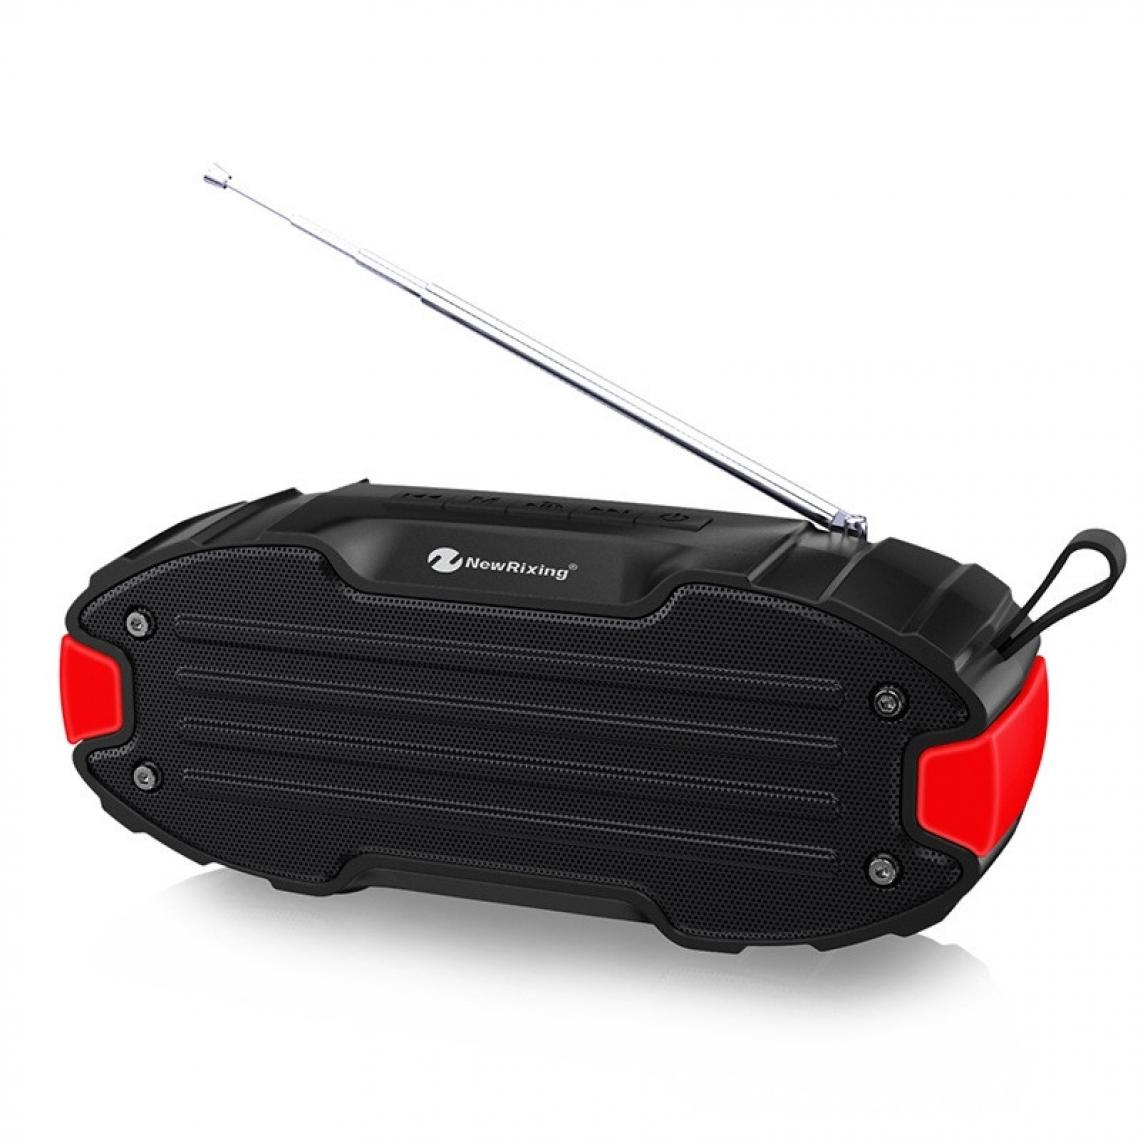 Wewoo - Enceinte Bluetooth NR907 Haut-parleur portable stéréo avec barre de son surround microphonecarte Micro SD de soutien FM rouge - Enceintes Hifi